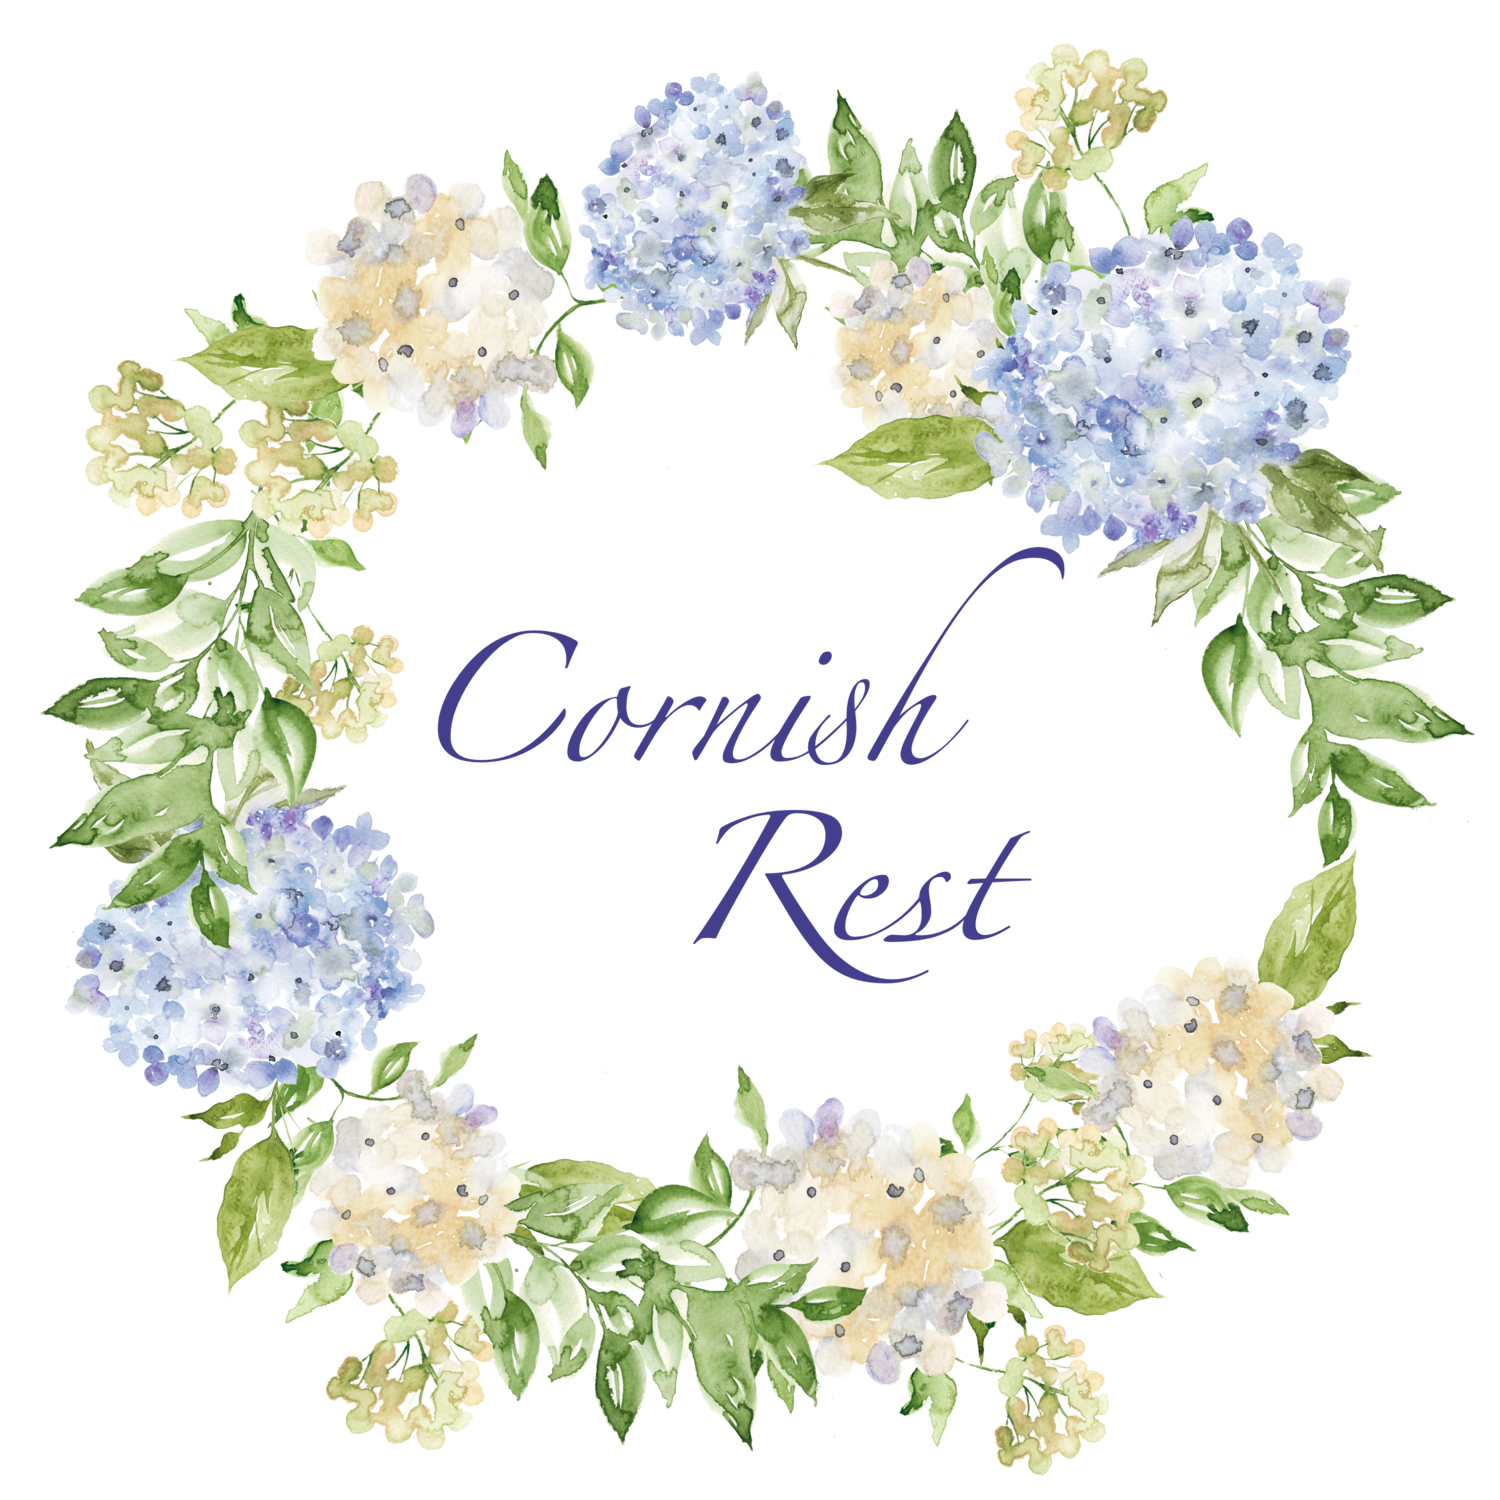 Cornish Rest